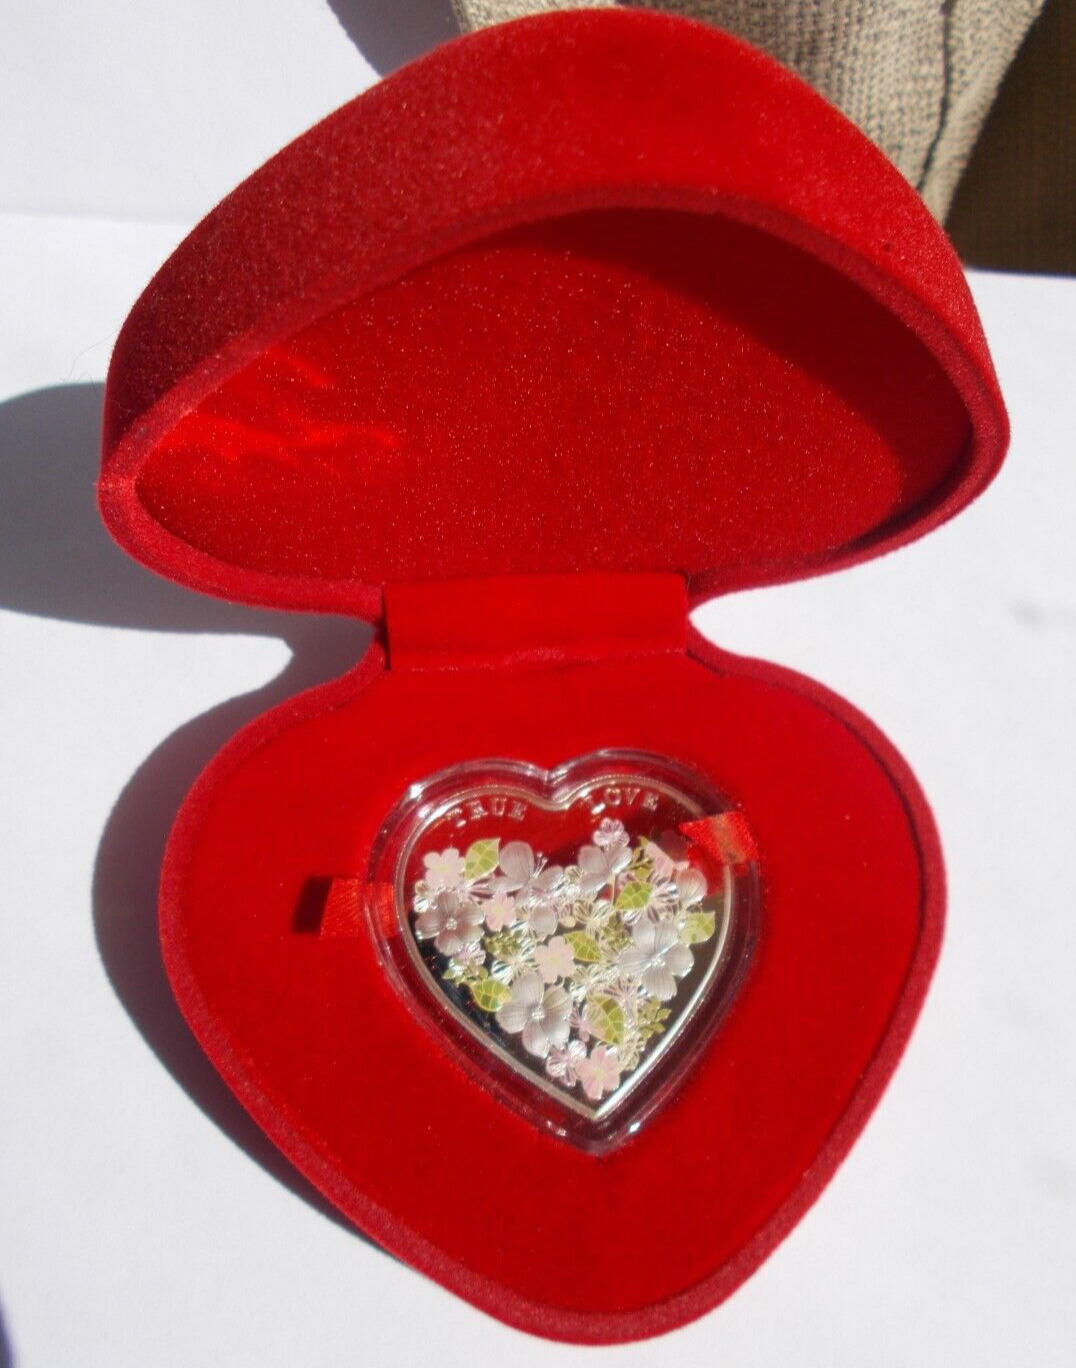 2012 TOKELAU .999 FINE SILVER $1 TRUE LOVE HEART SHAPE COIN IN BOX WITH COA